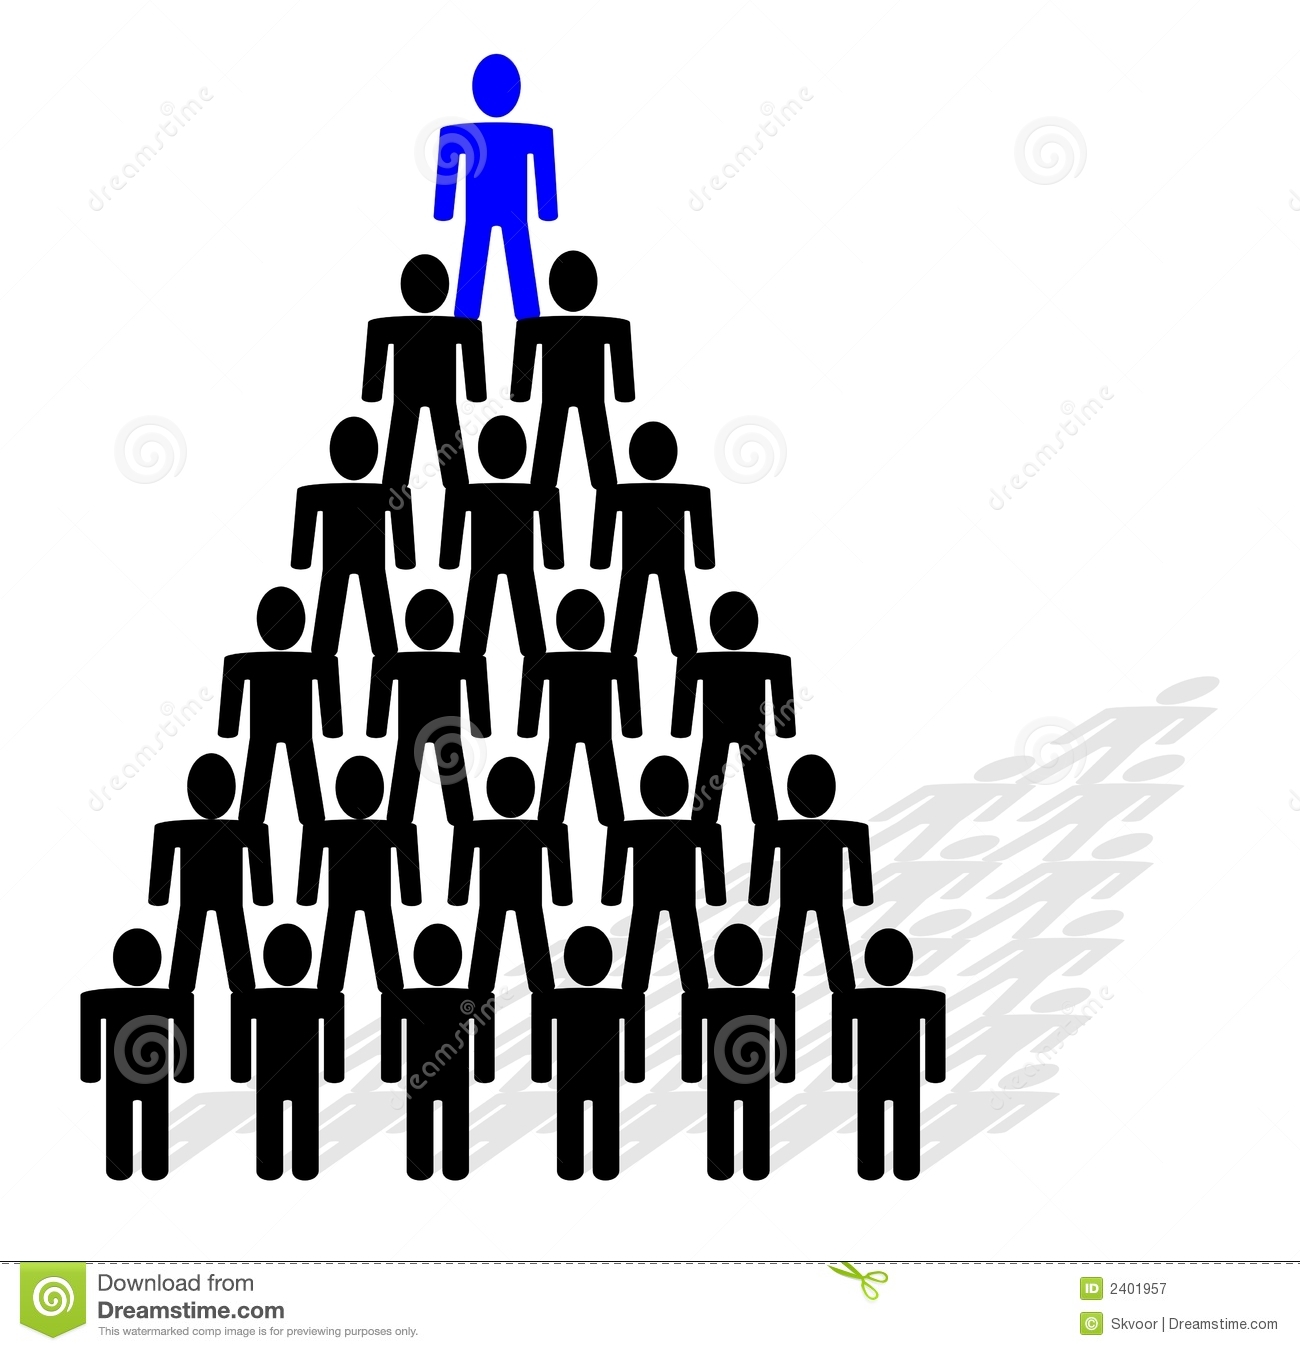 people-pyramid-2401957